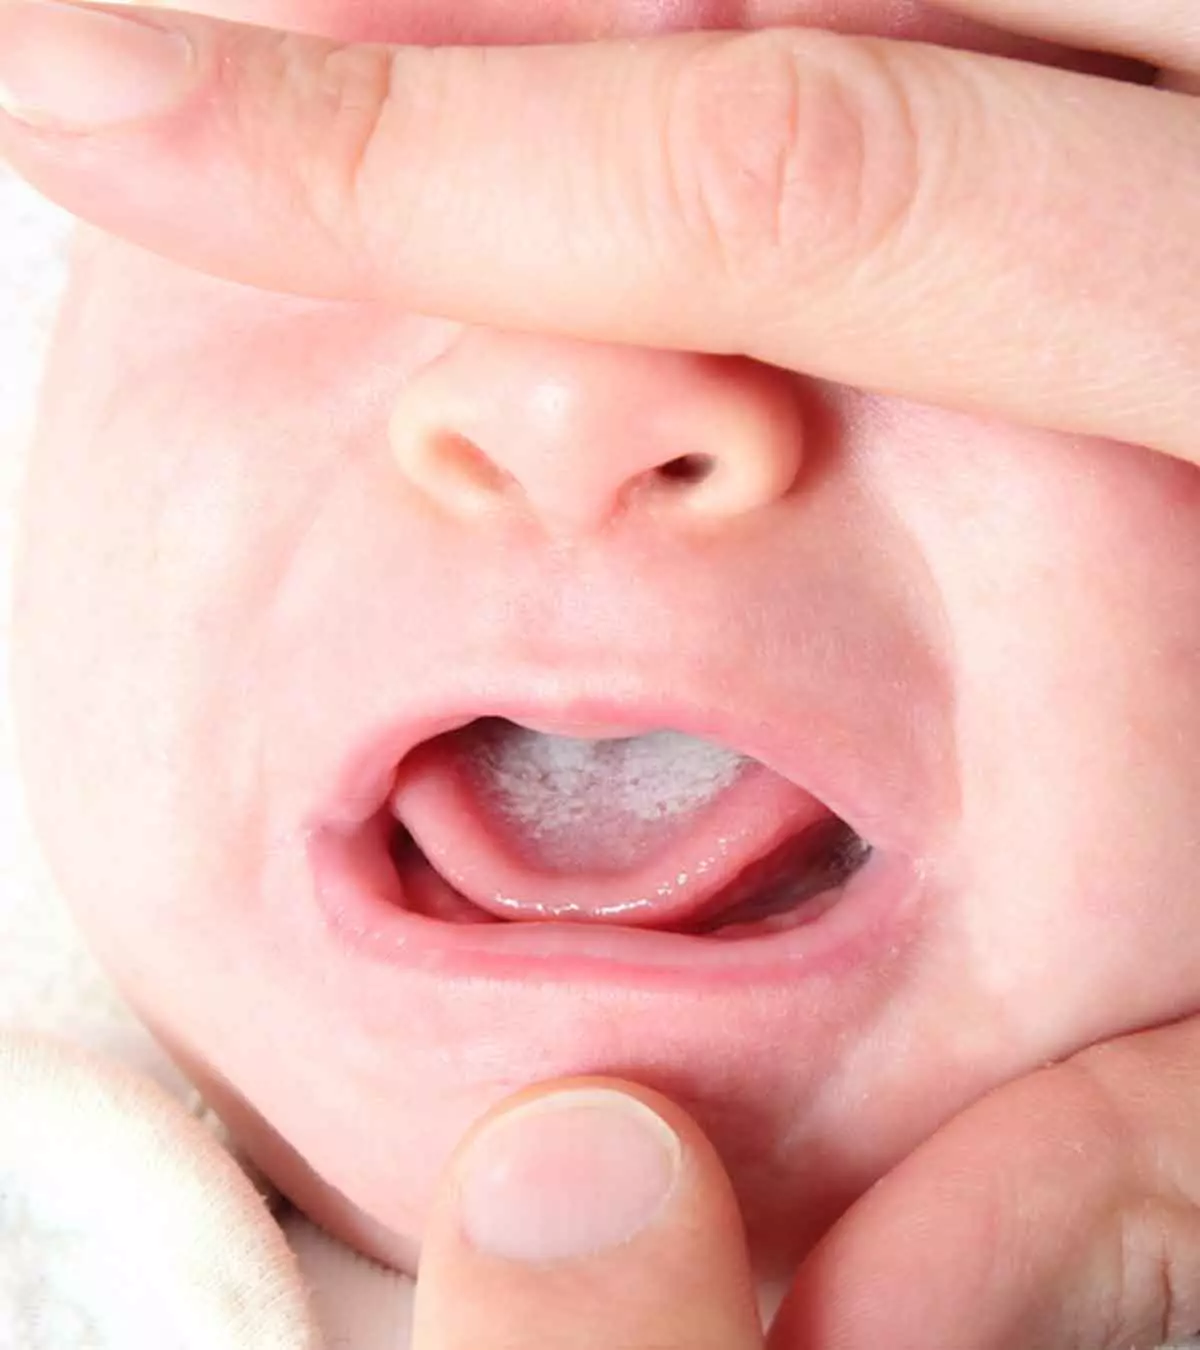 बच्चों के मुंह में छाले (Oral Thrush) का इलाज व घरेलू उपाय | Baccho Ke Muh Mein Chhale